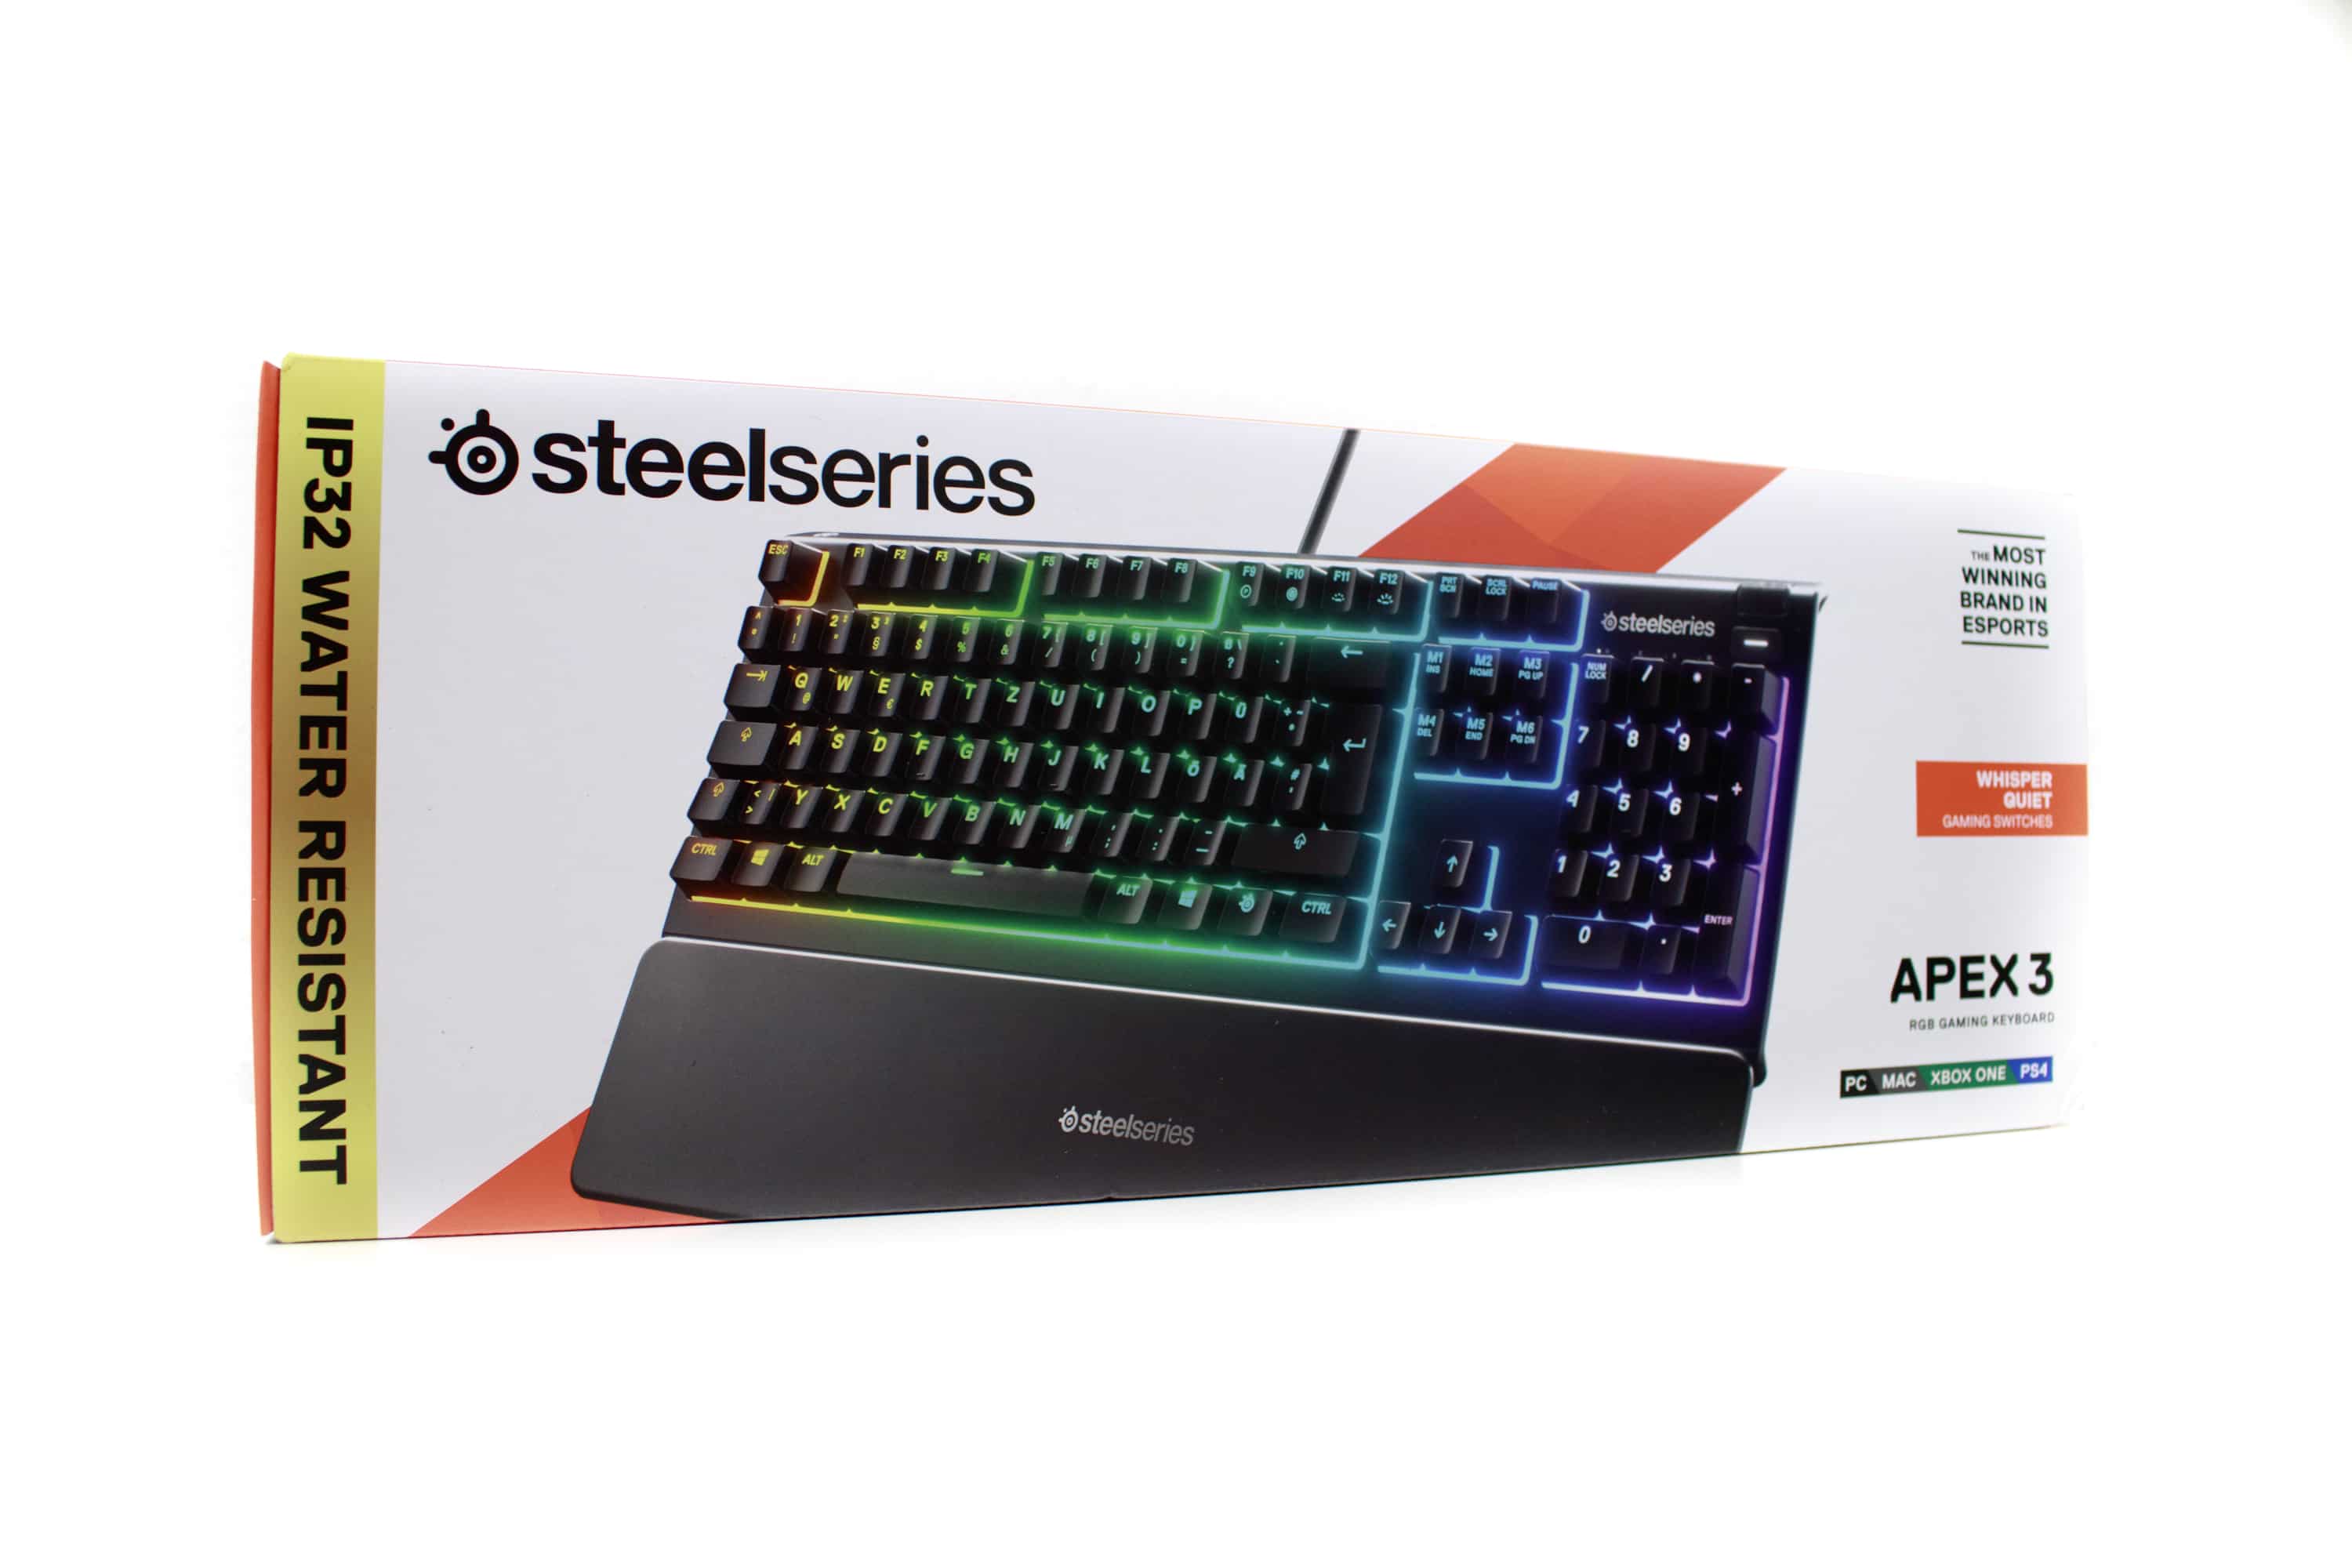 SteelSeries Apex 3 - water-resistant gaming keyboard under test